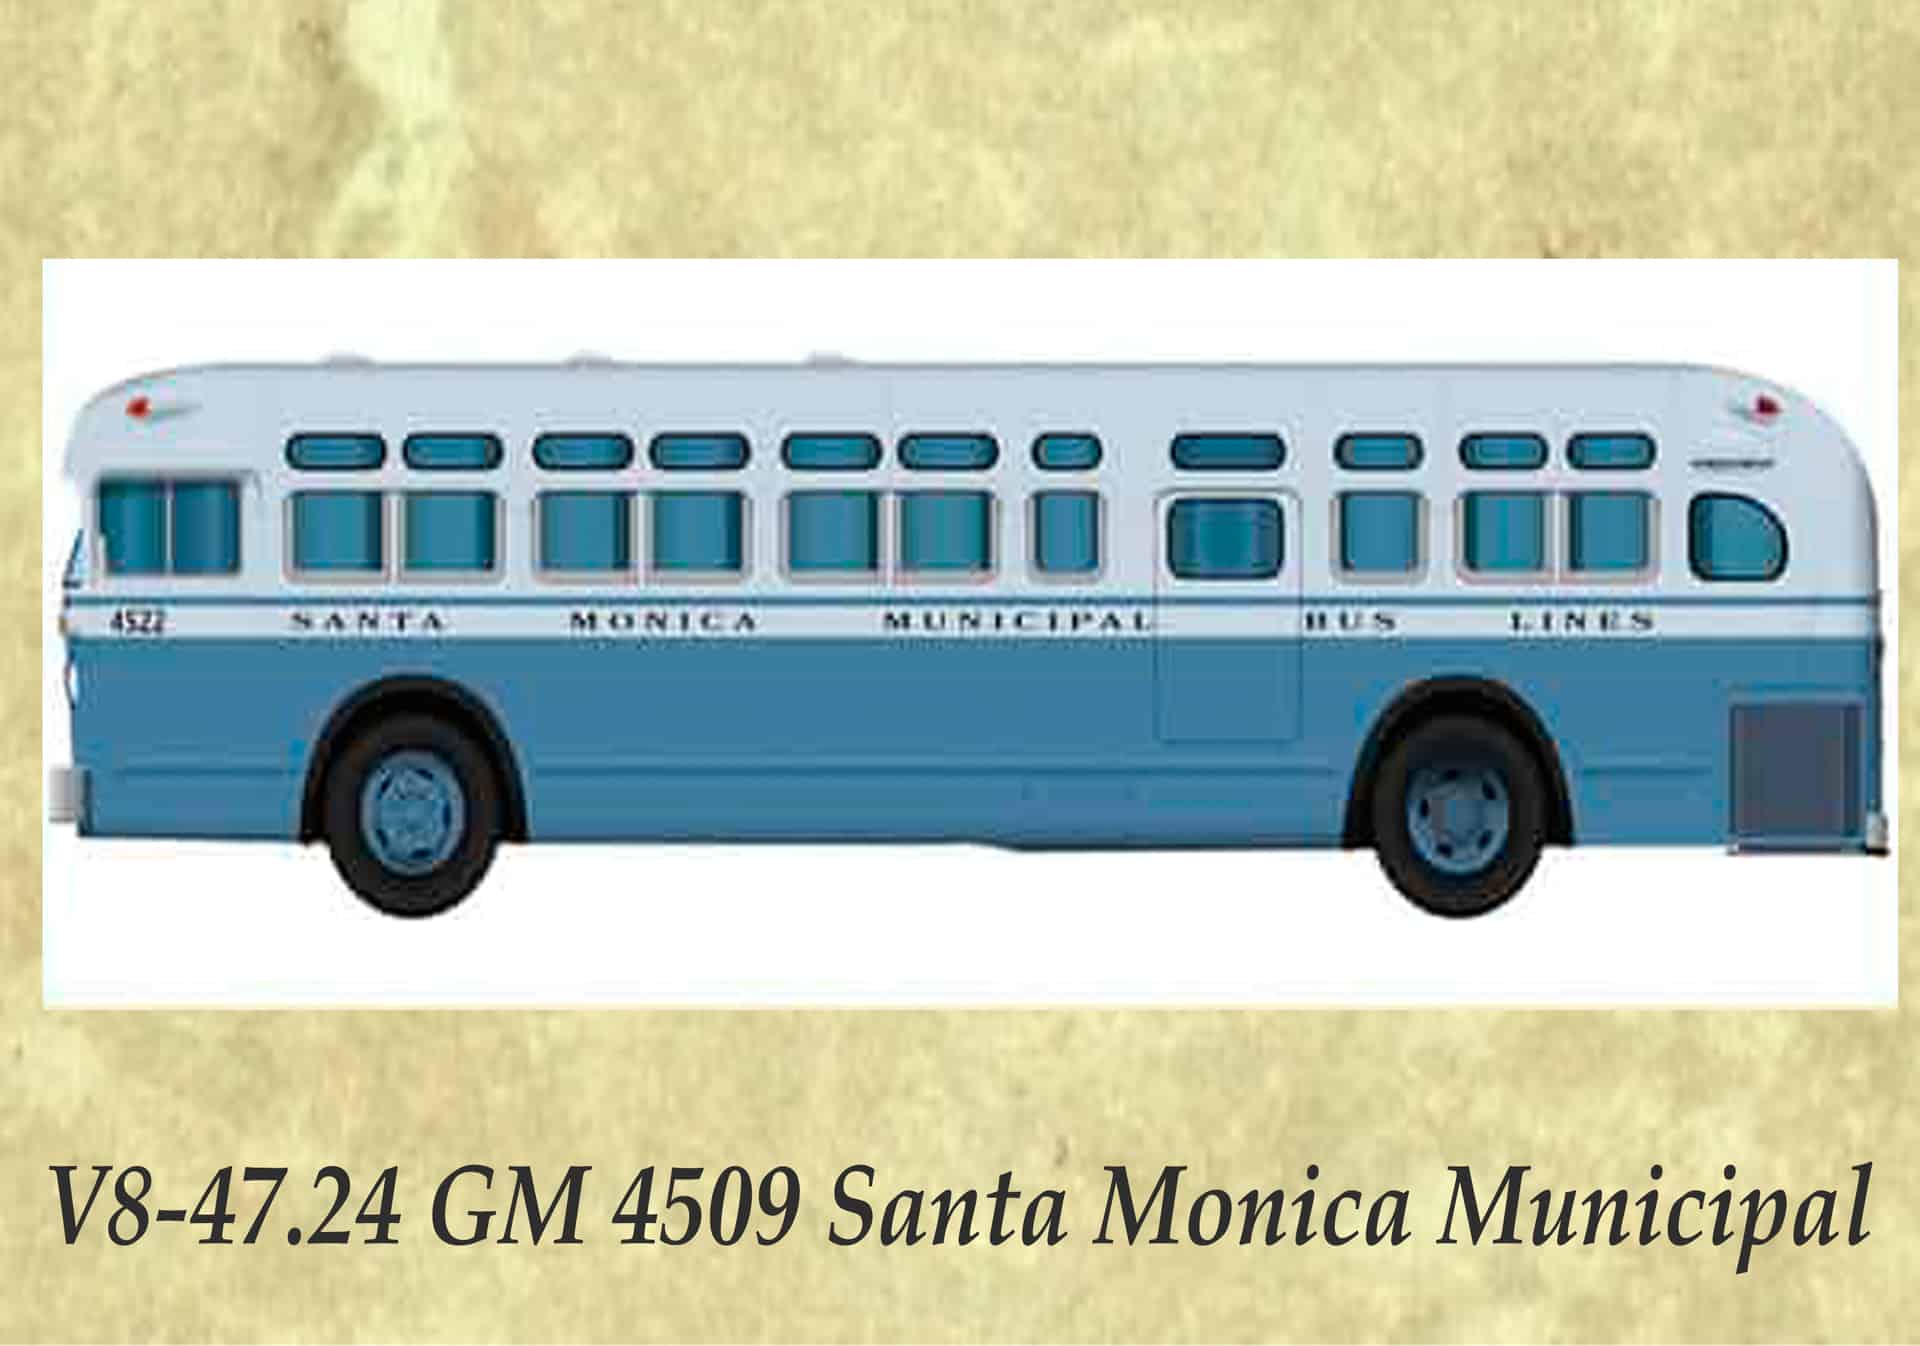 V8-47.24 GM 4509 Santa Monica Municipal